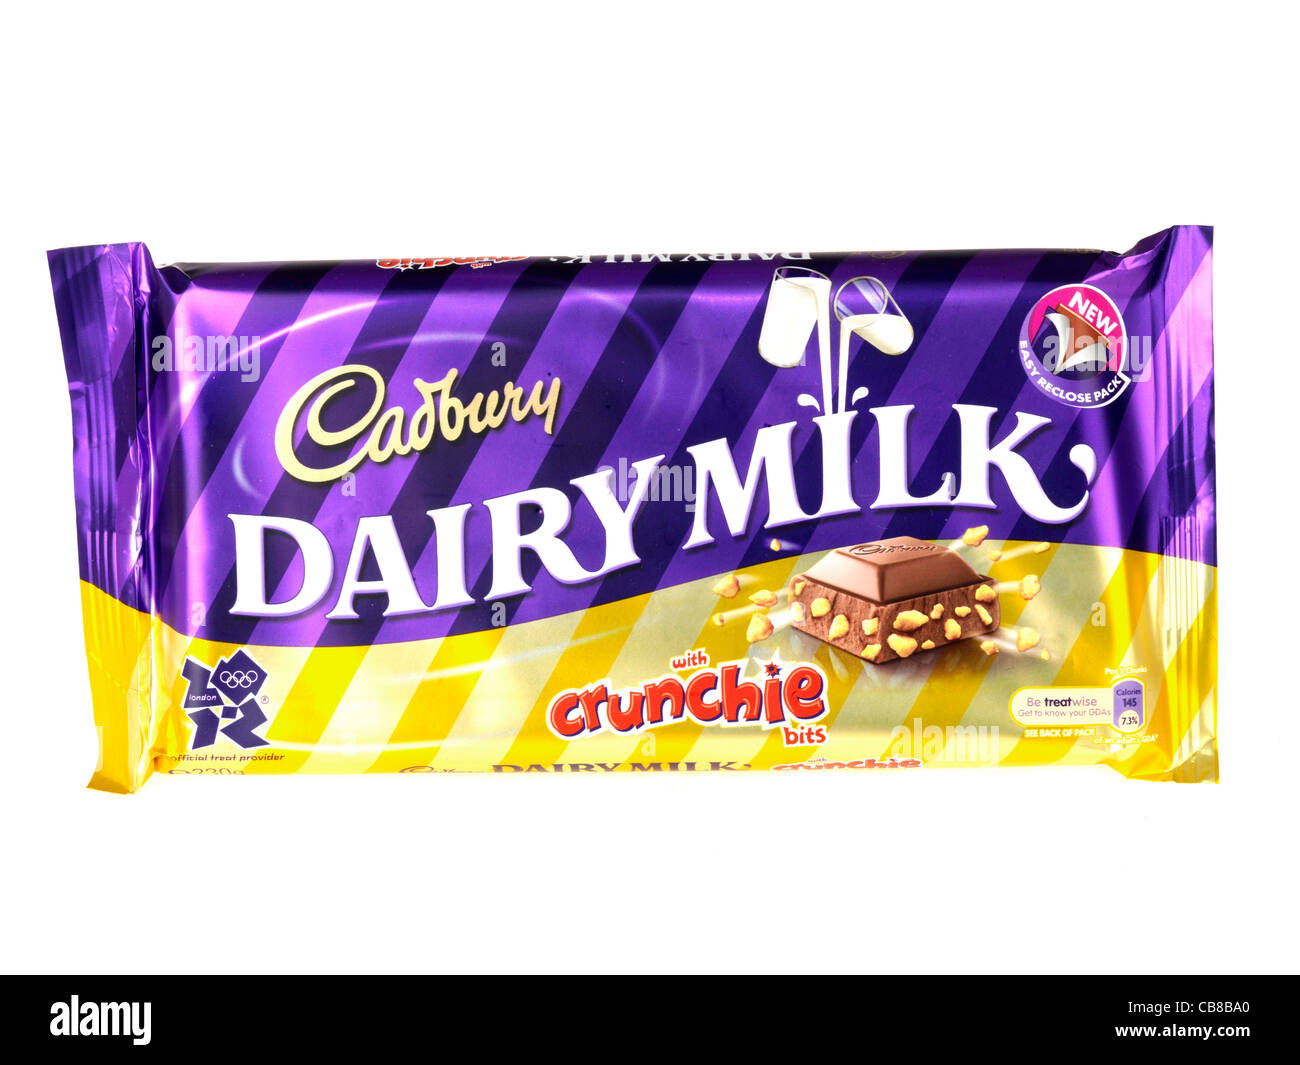 Cadbury Dairy Milk Crunchie Chocolate Bar Stock Photo